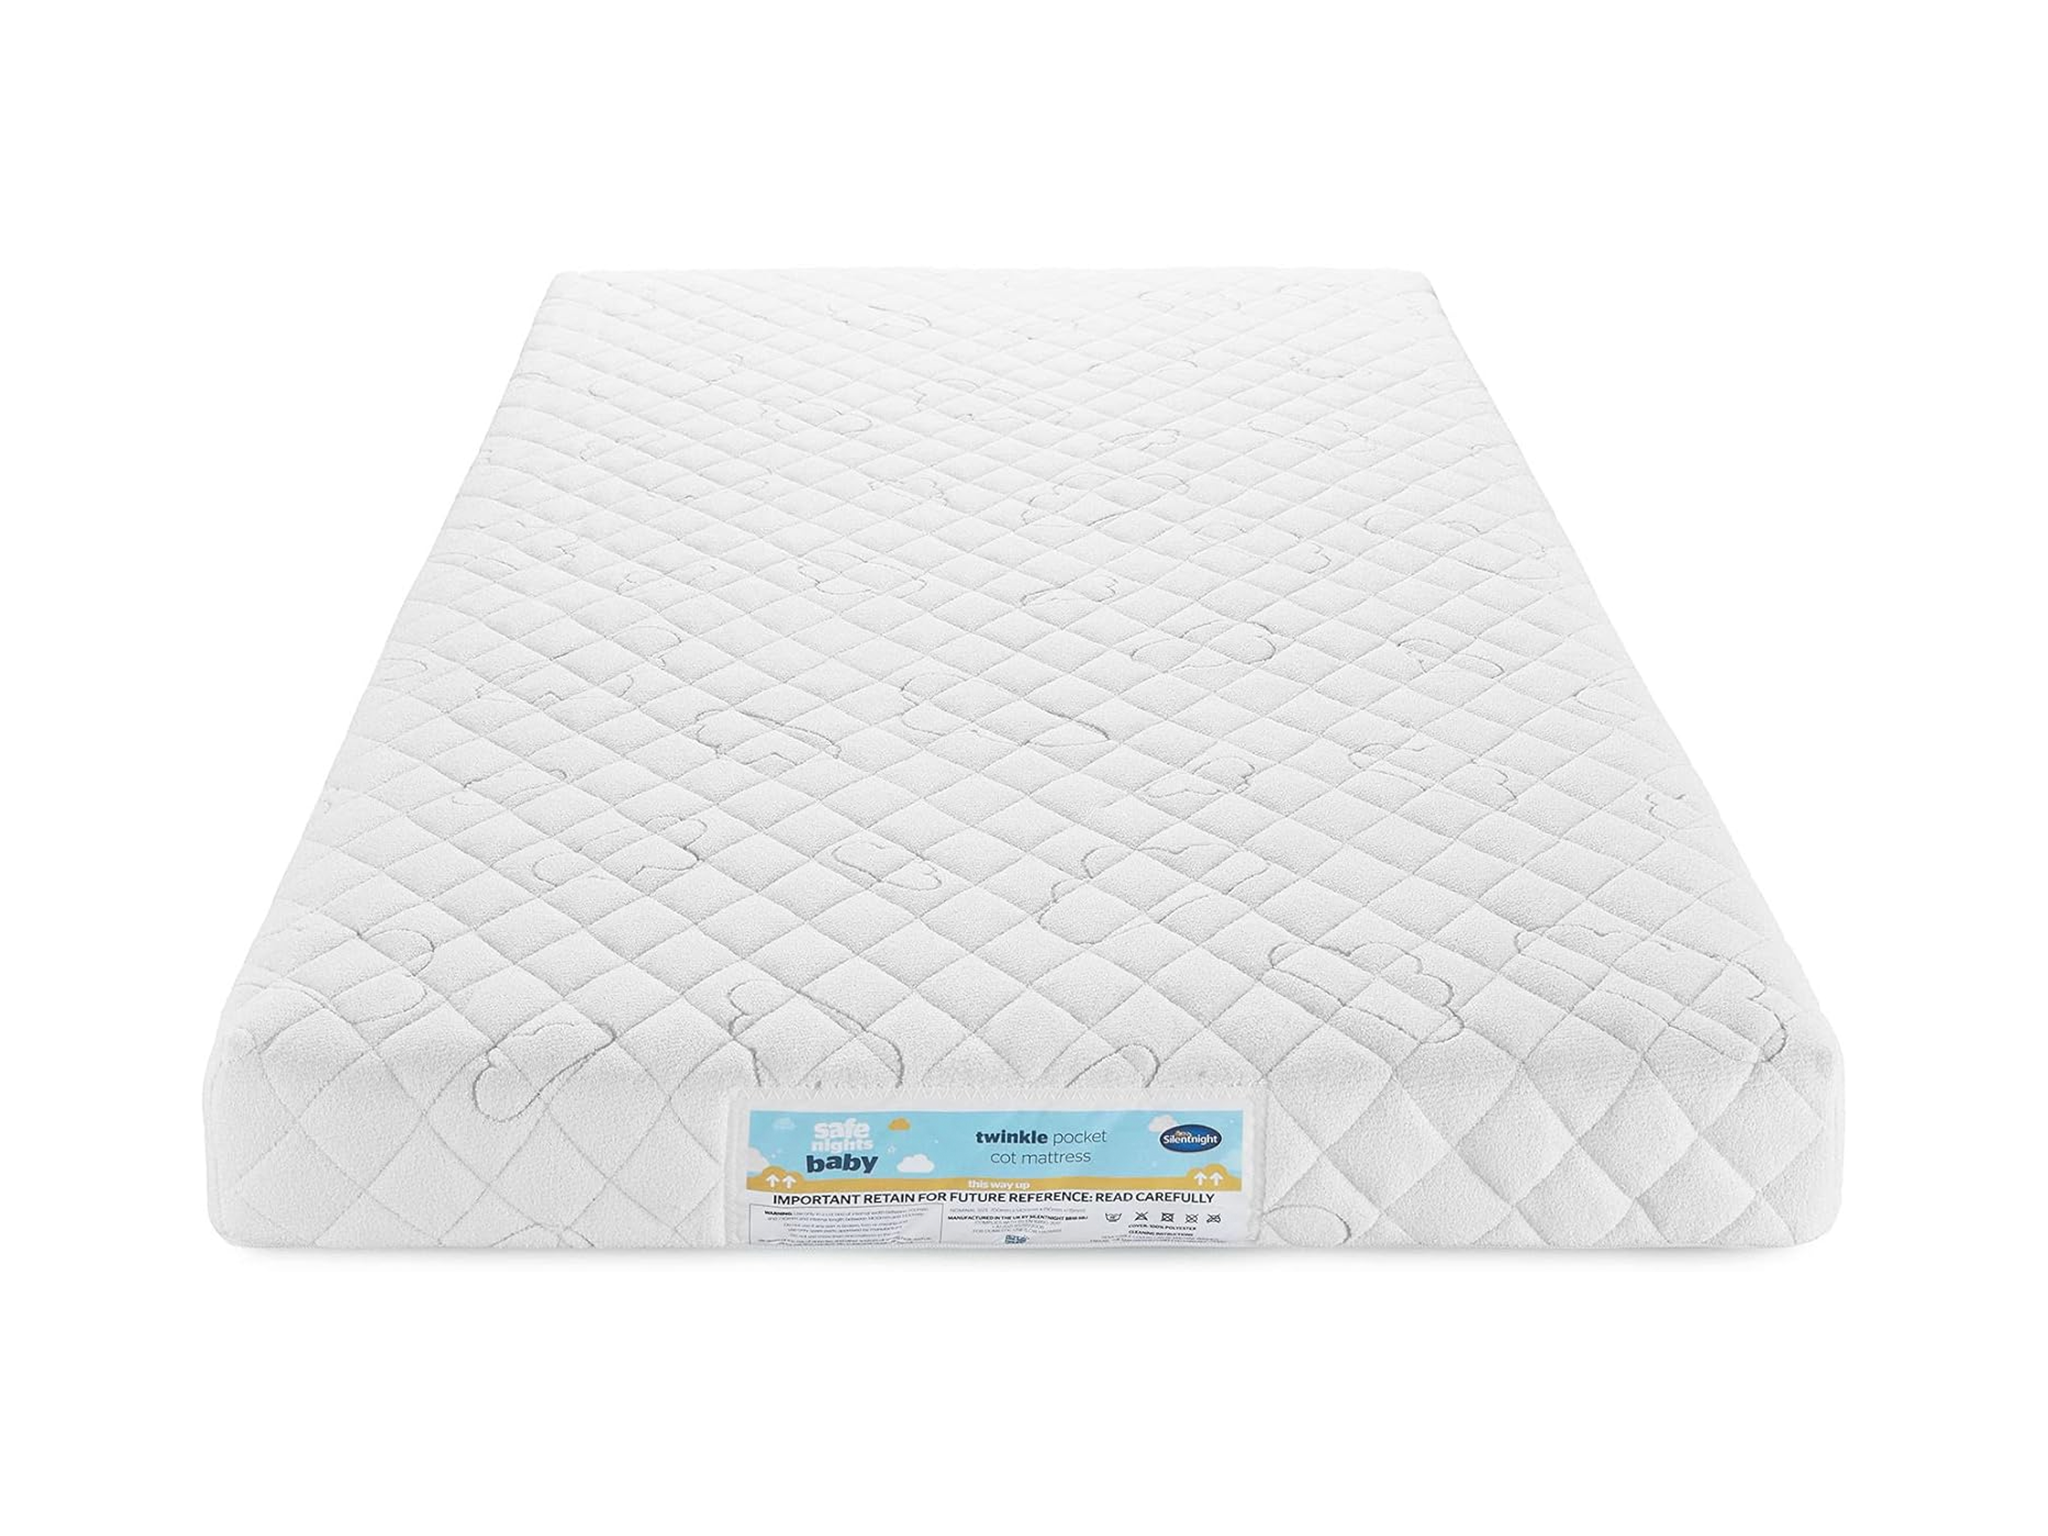 best cot mattress Silentnight safe nights twinkle breathable mattress